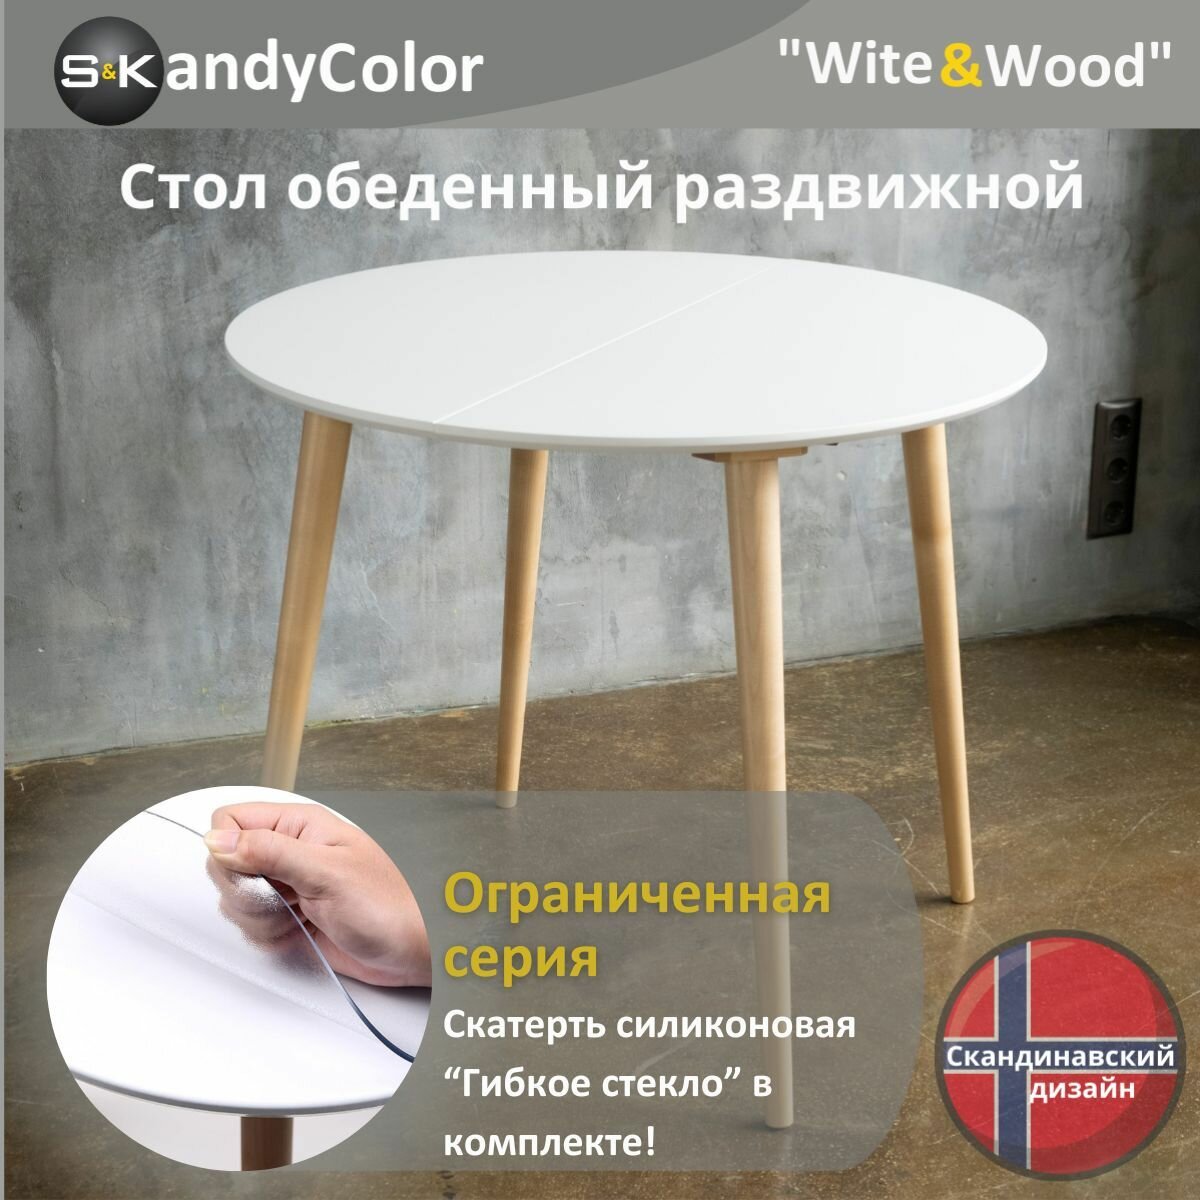 Стол обеденный раздвижной круглый SKandyColor 100/180 см цвет Белый (Итальянская Эмаль+Лак) + ножки из Массива дерева в натуральном цвете + Гибкое стекло в комплекте